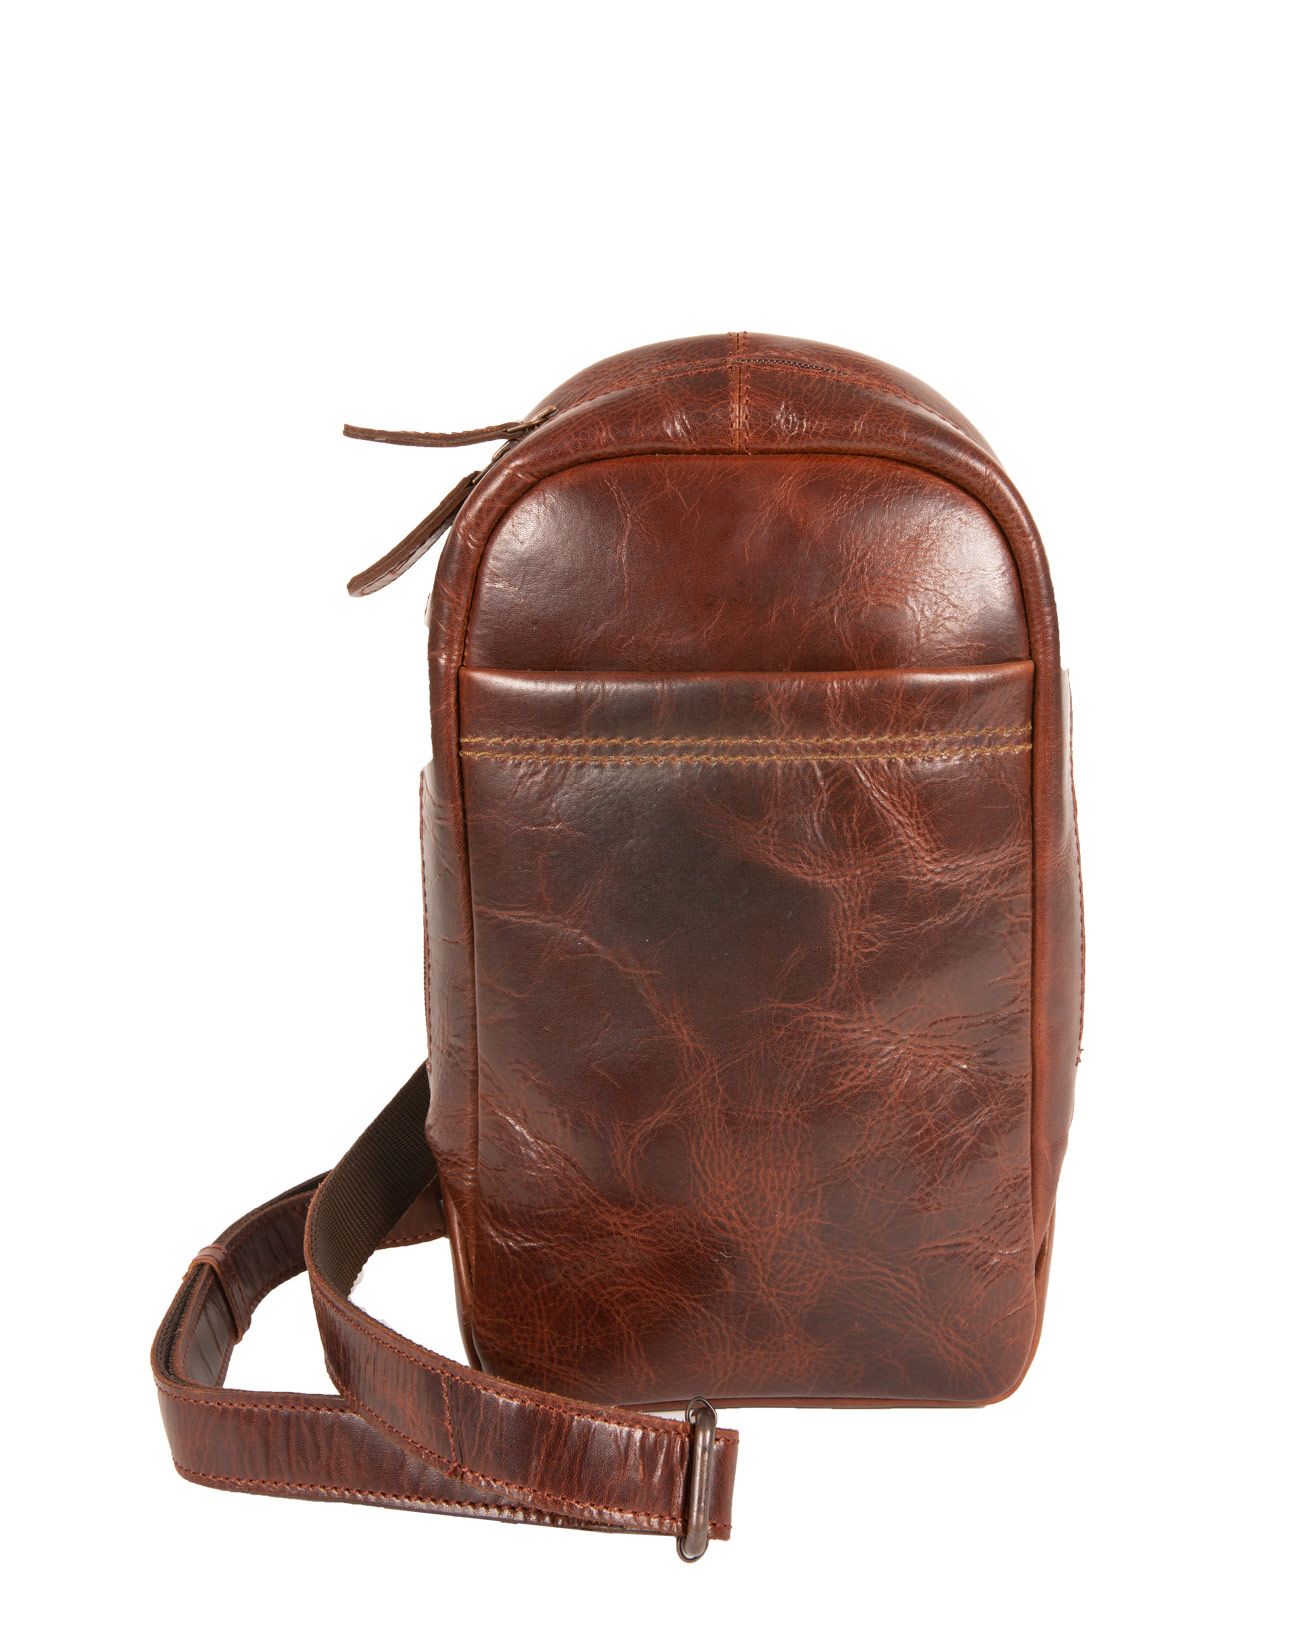 7538-burnished sling bag-chestnut-front.jpg